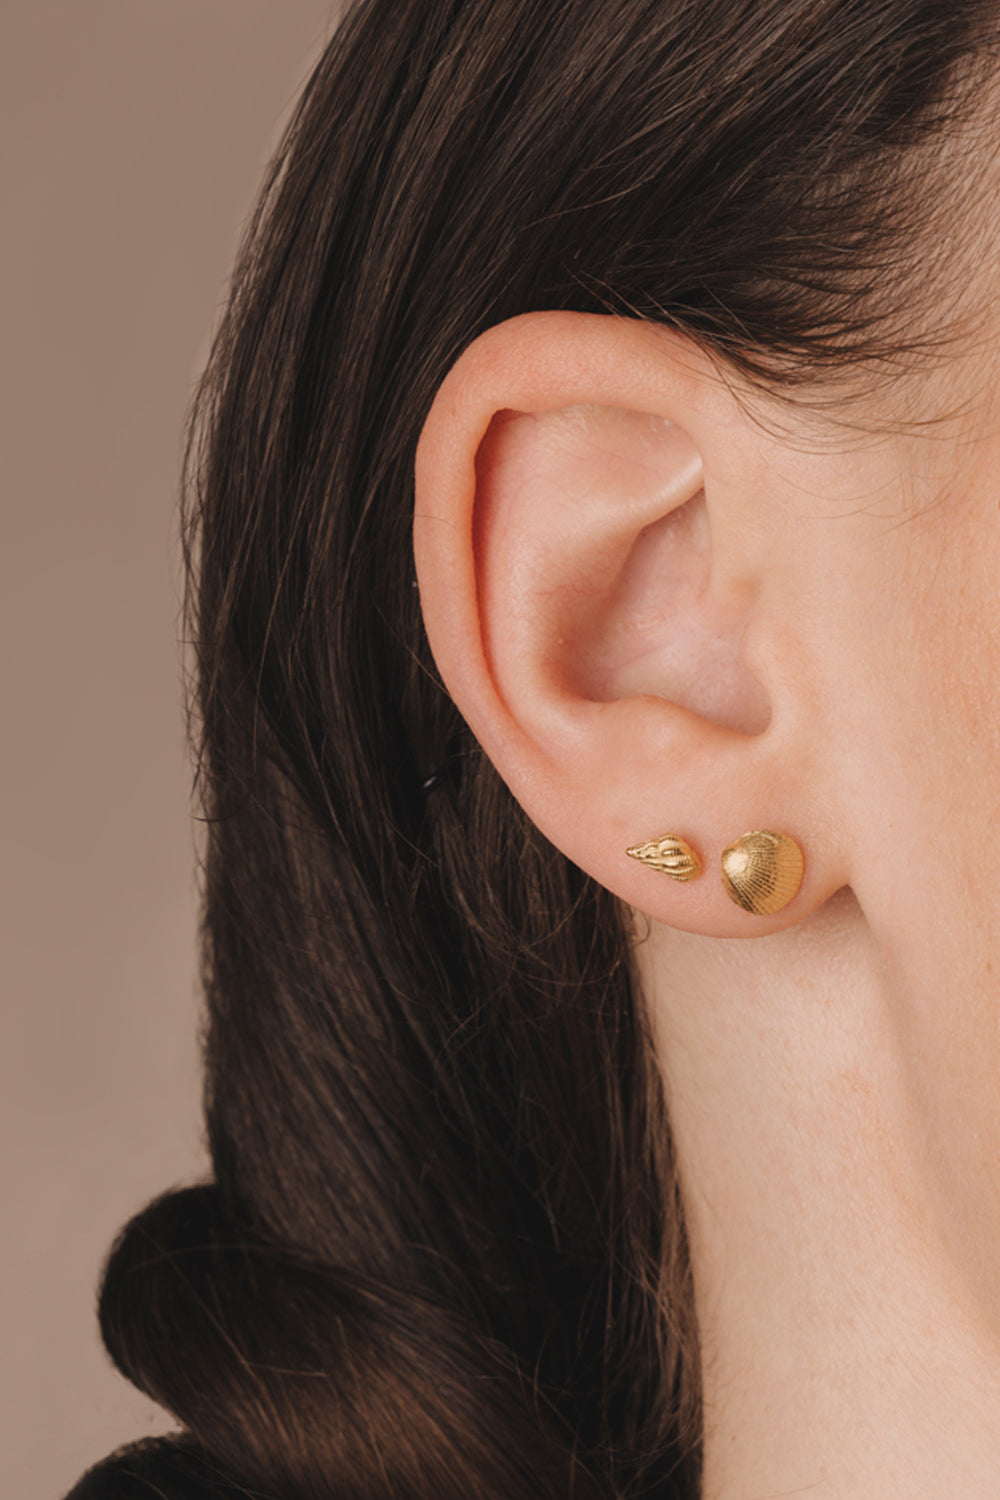 Conch shell earrings